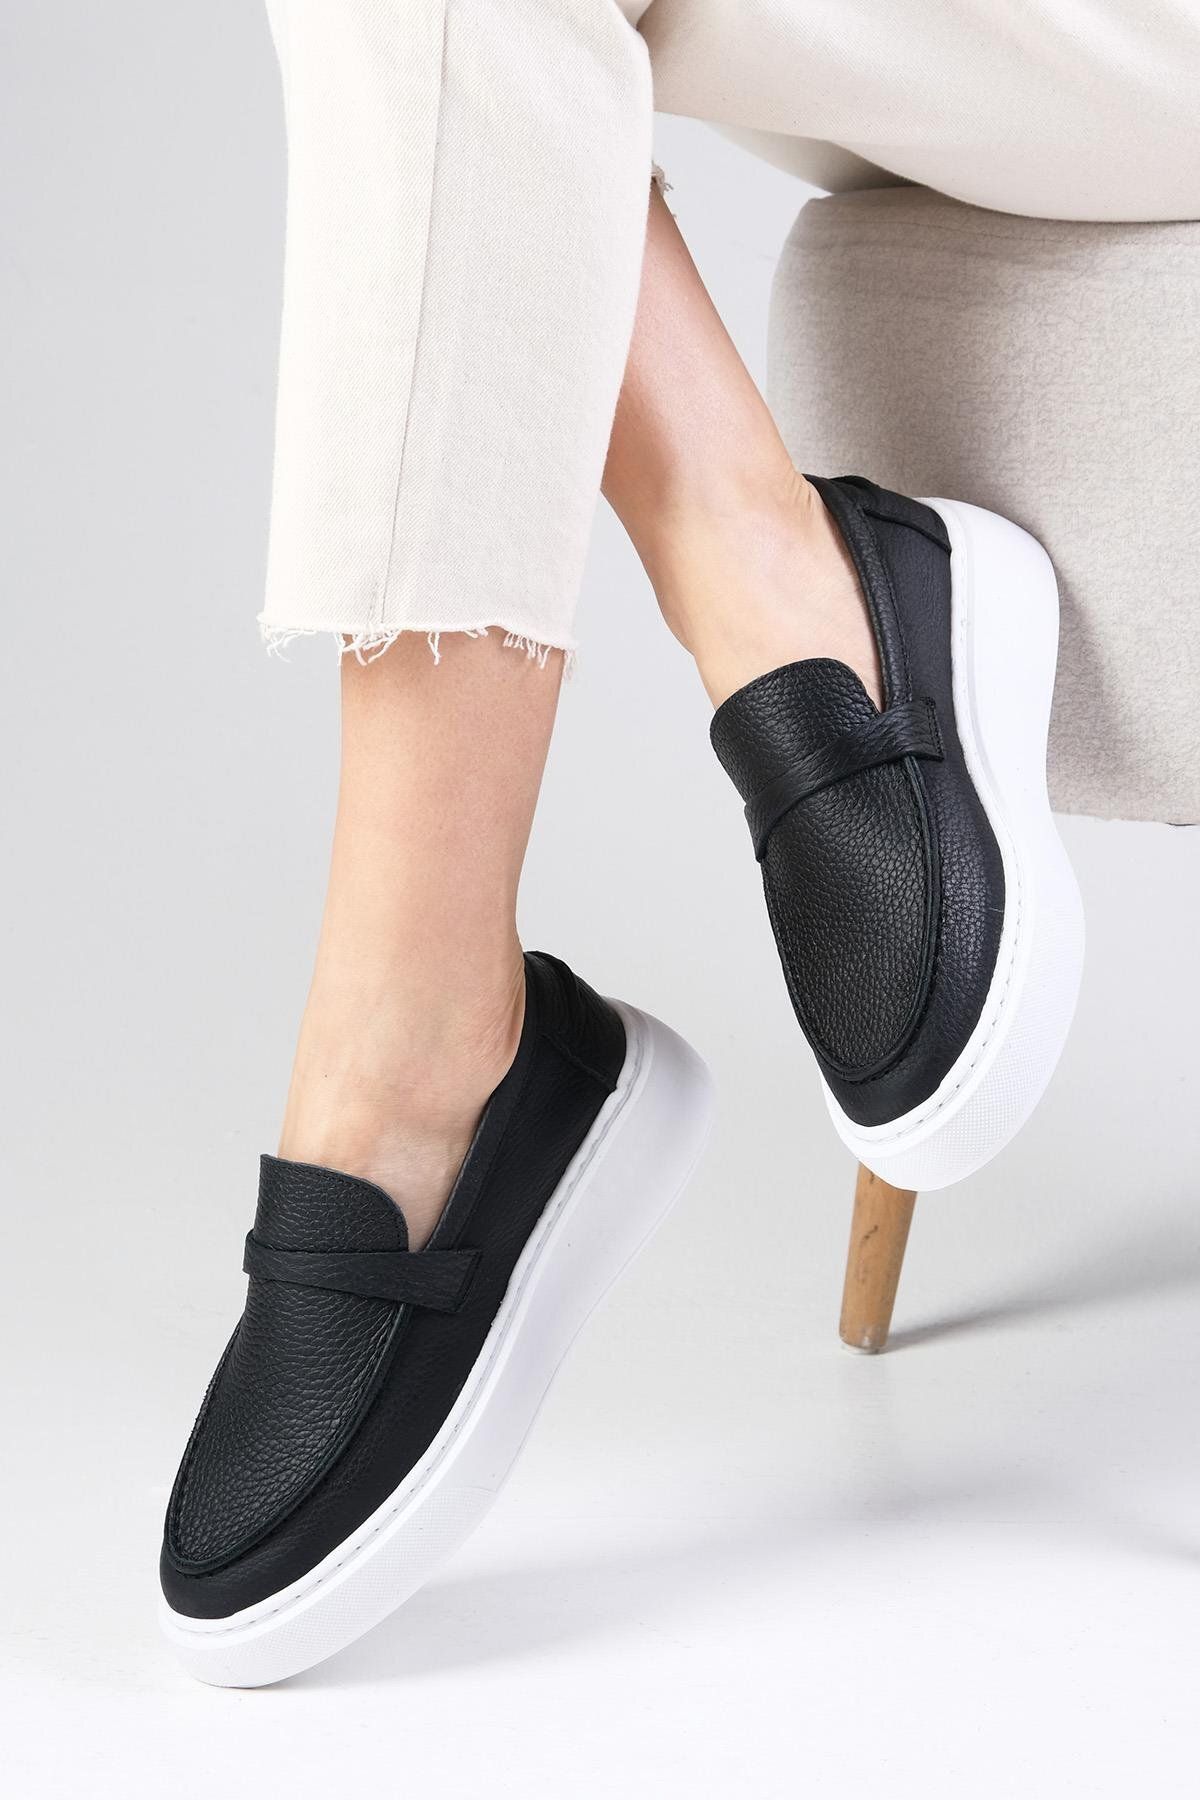 Mio Gusto Olenna Hakiki Deri Siyah Renk Oval Burunlu Kadın Loafer Ayakkabı